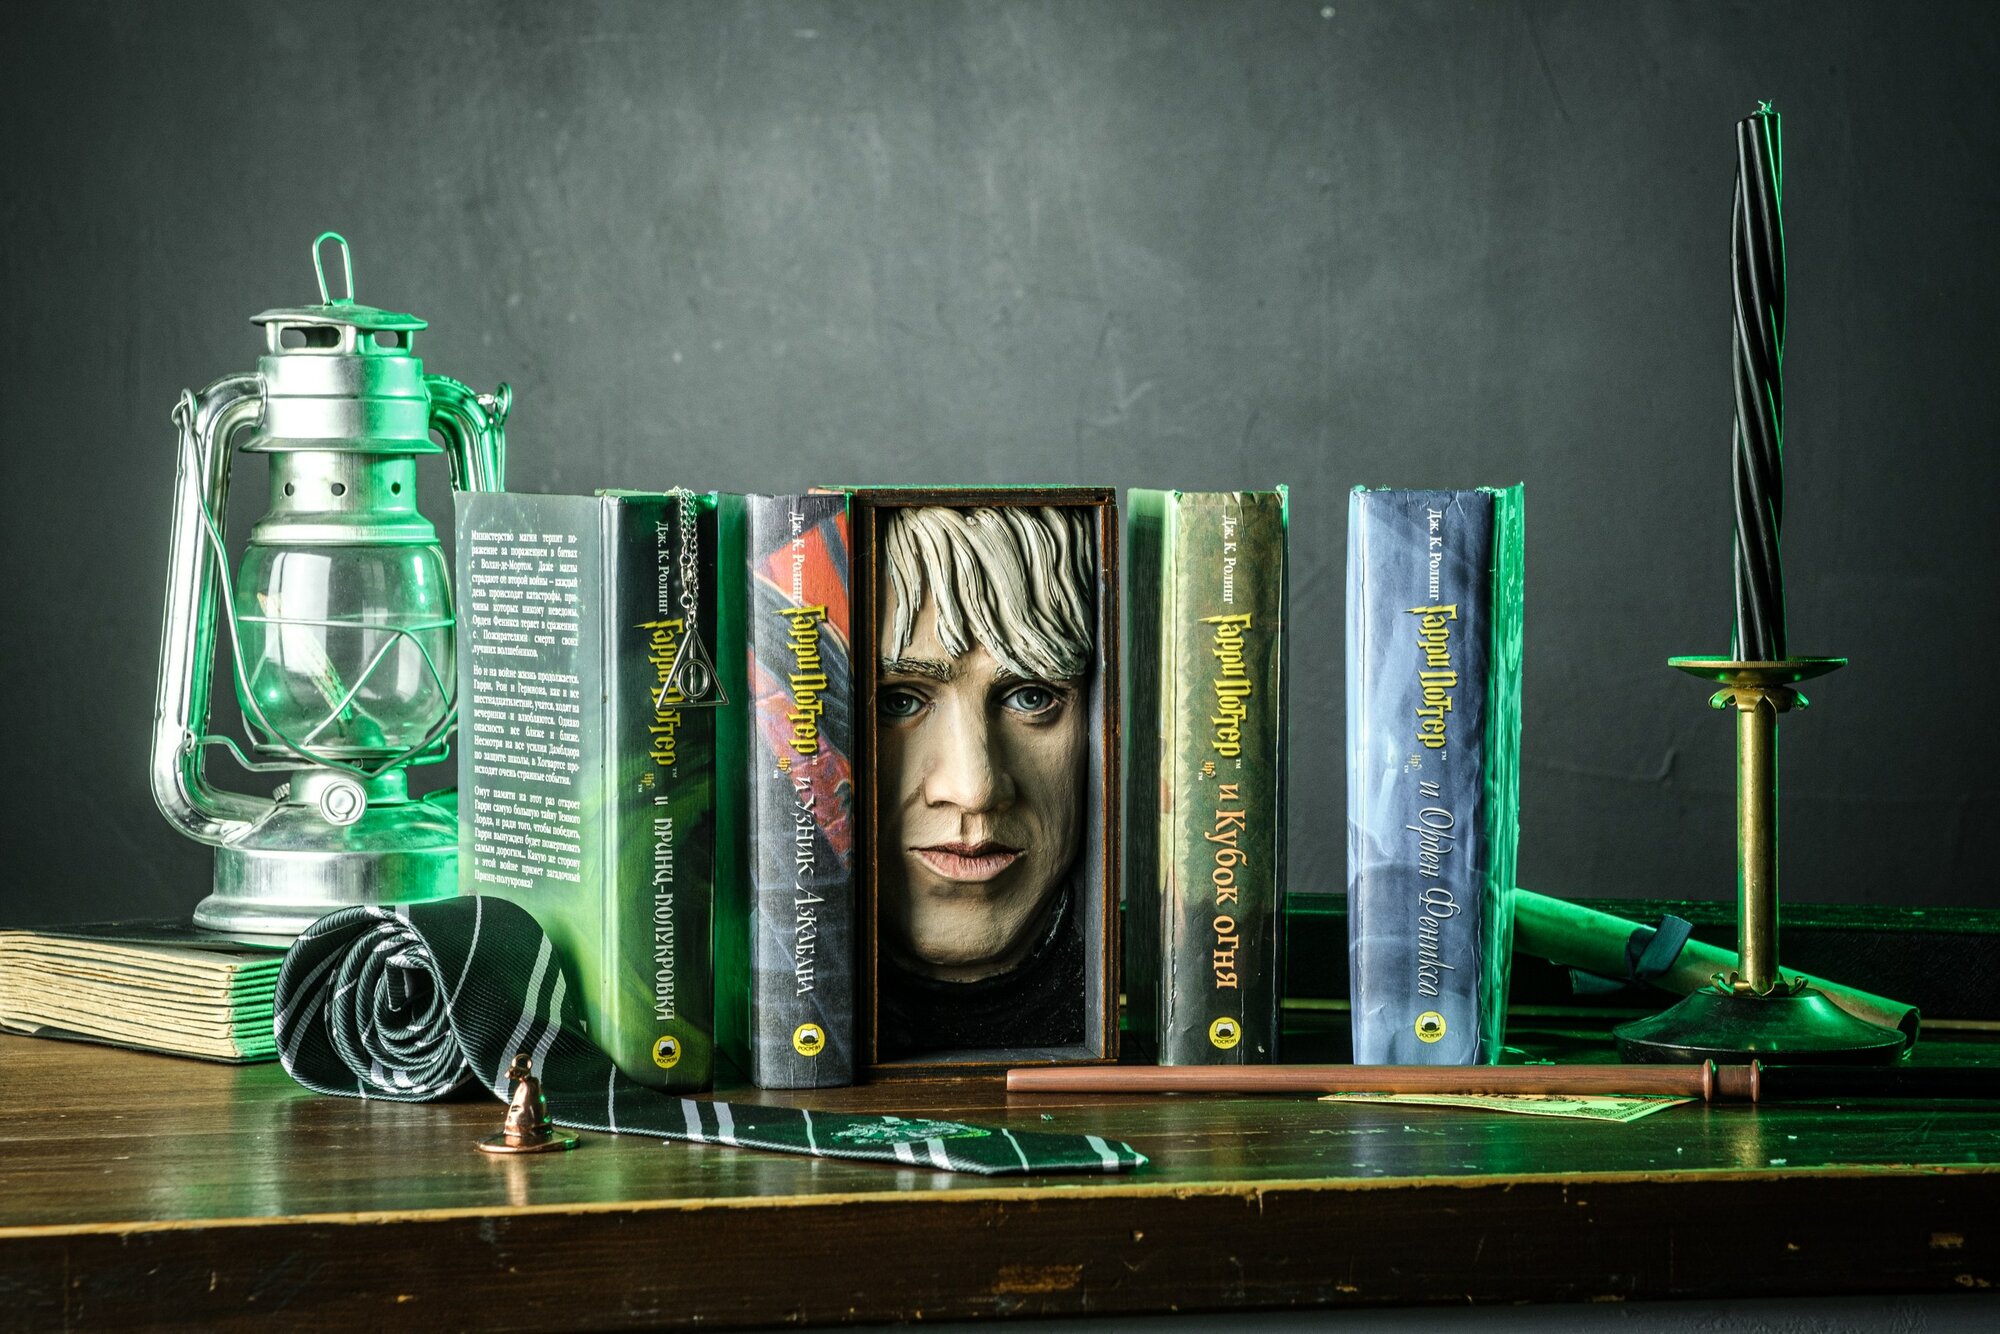 Book Nook, вставка-шкатулка между книг "Драко Малфой" из Гарри Поттера